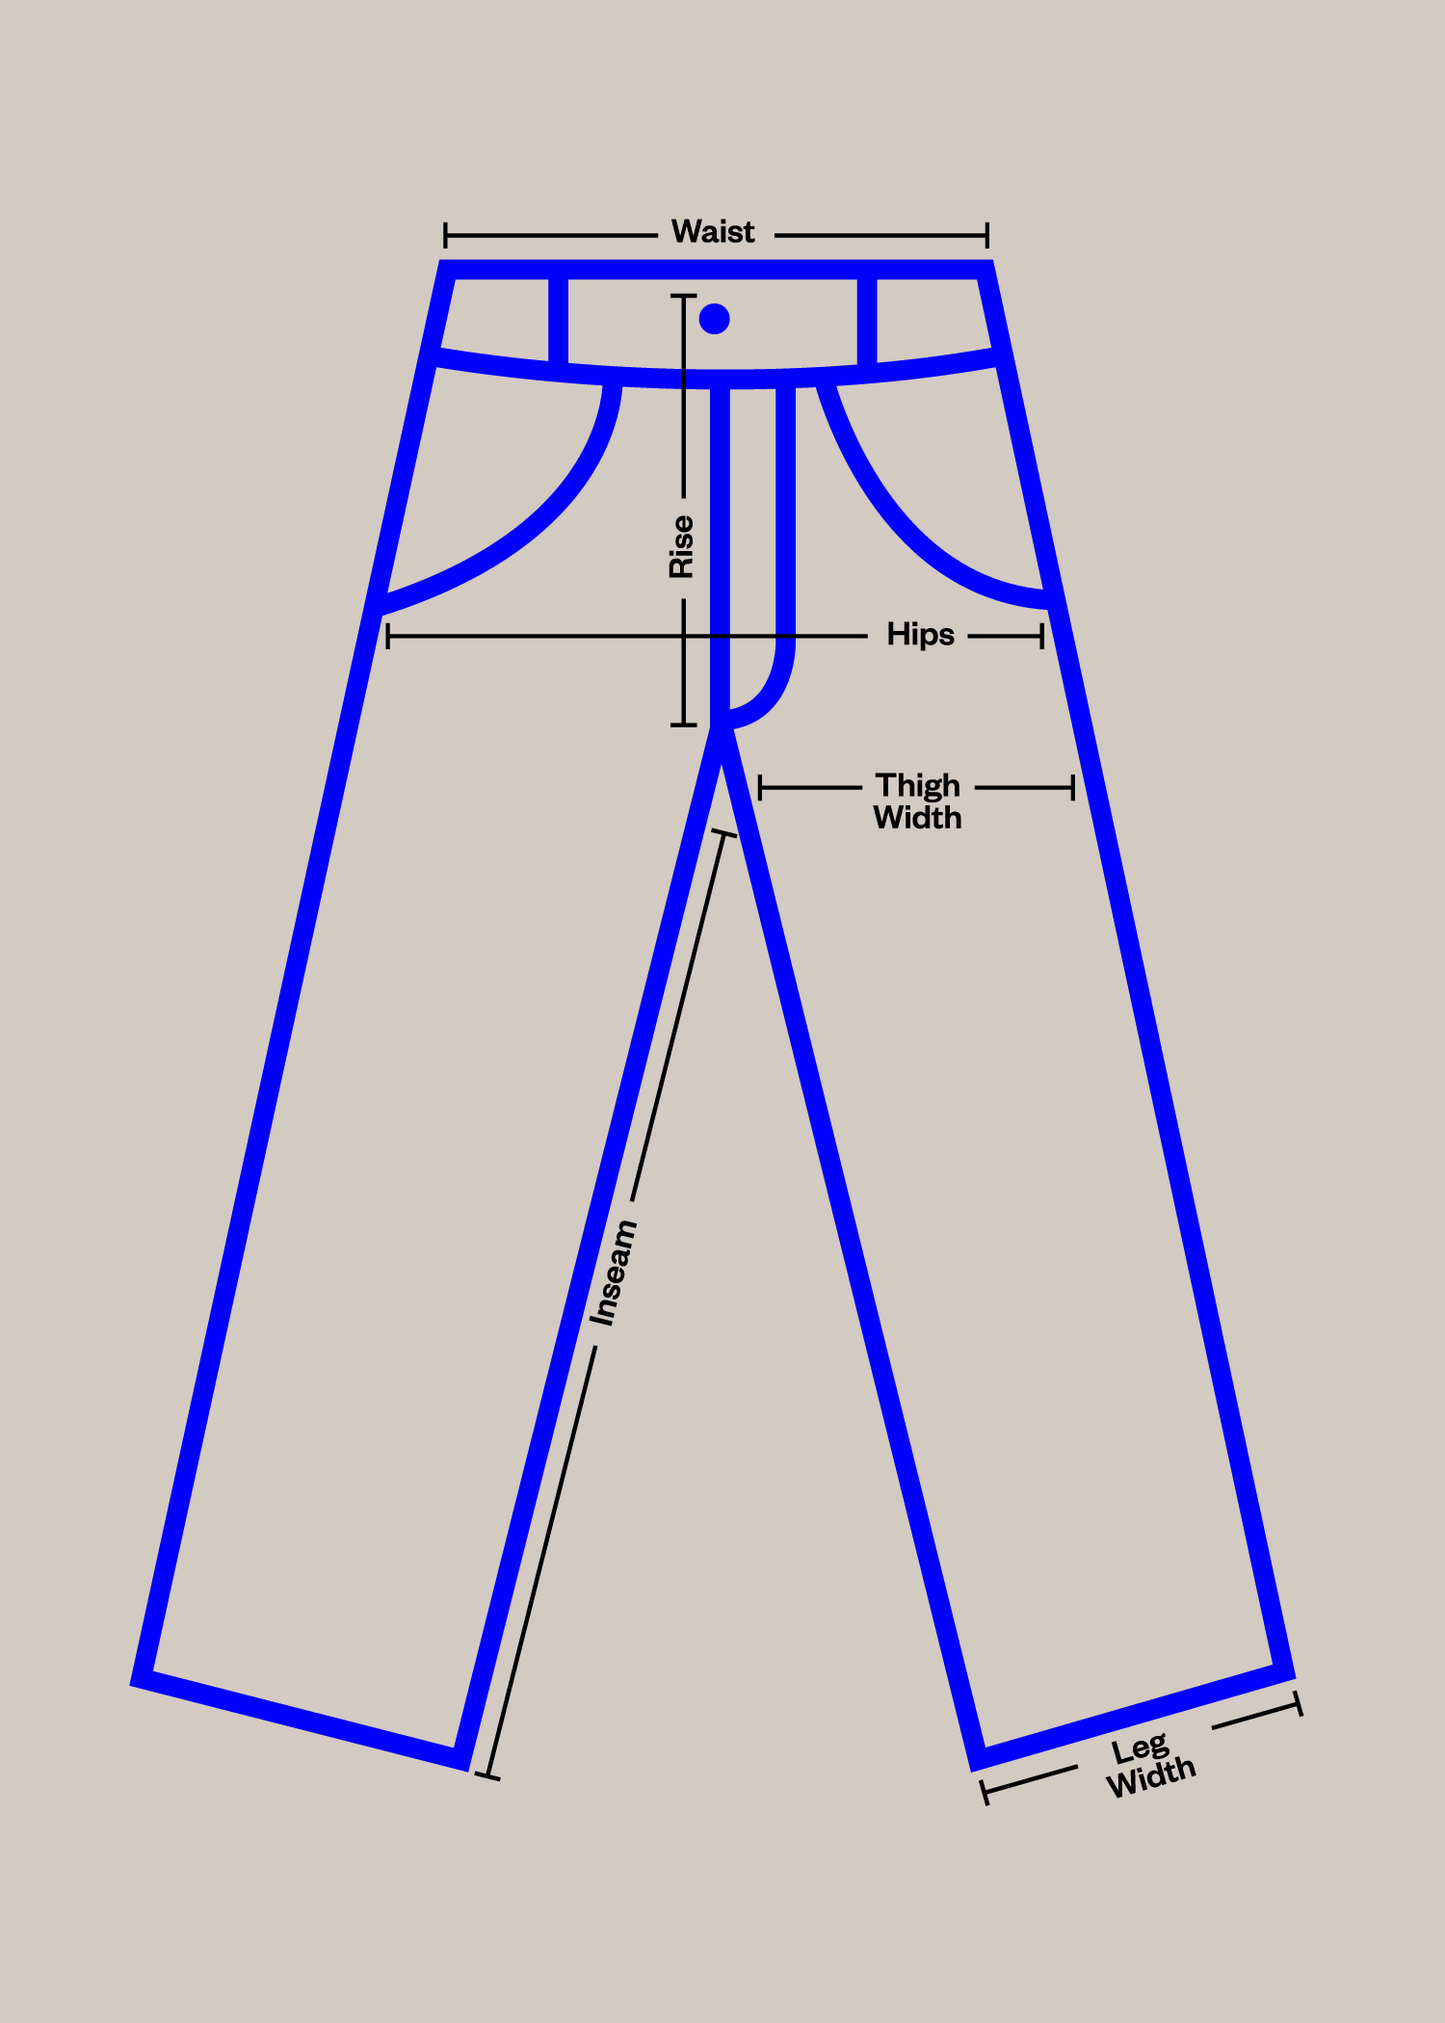 1970s Champion Emmaus Boys Tennis Reverse Weave Sweatpants Size S/M